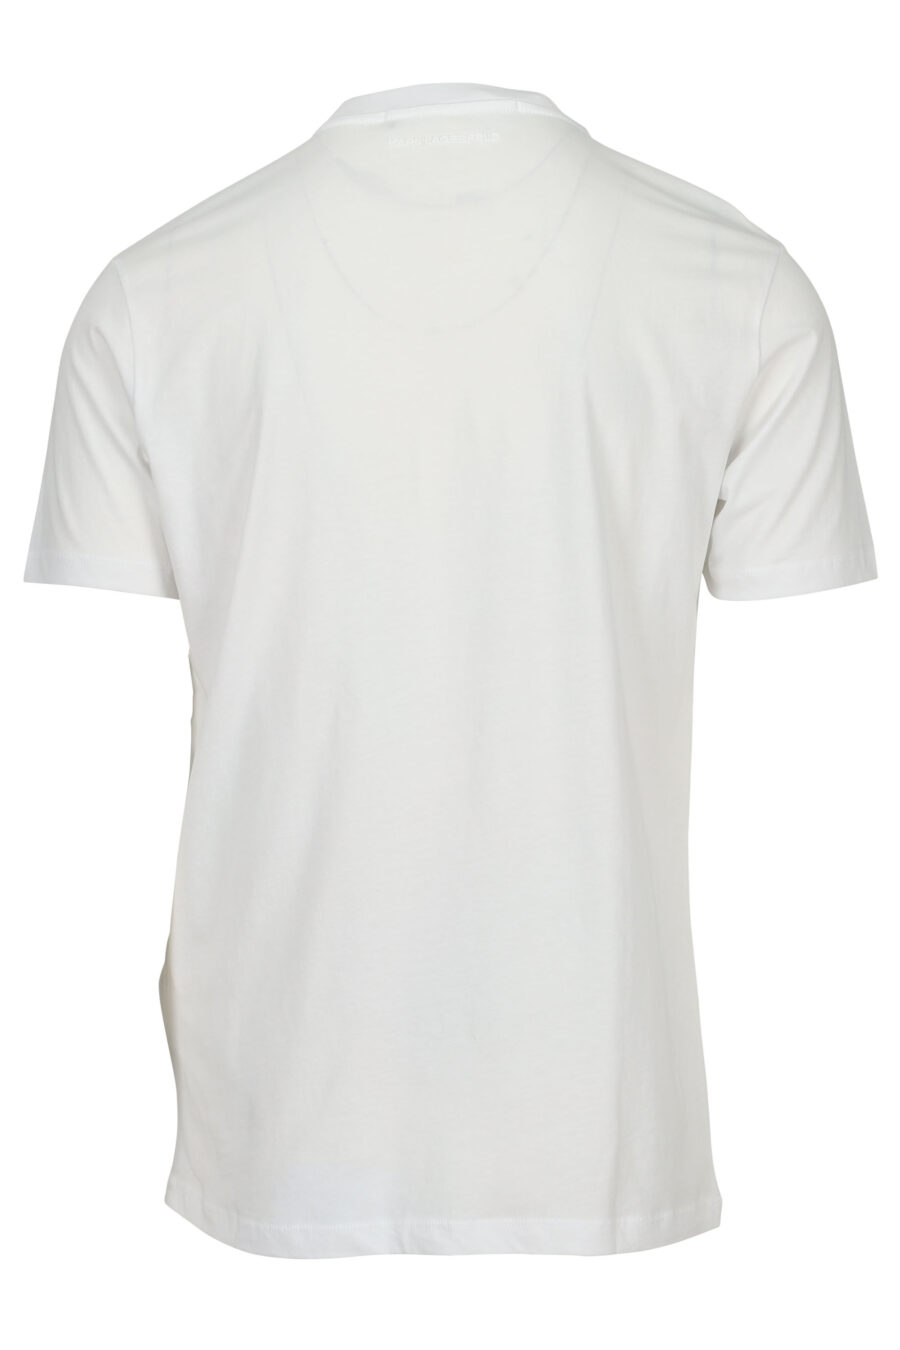 Camiseta blanca con logo en mancha negra - 4062226964739 1